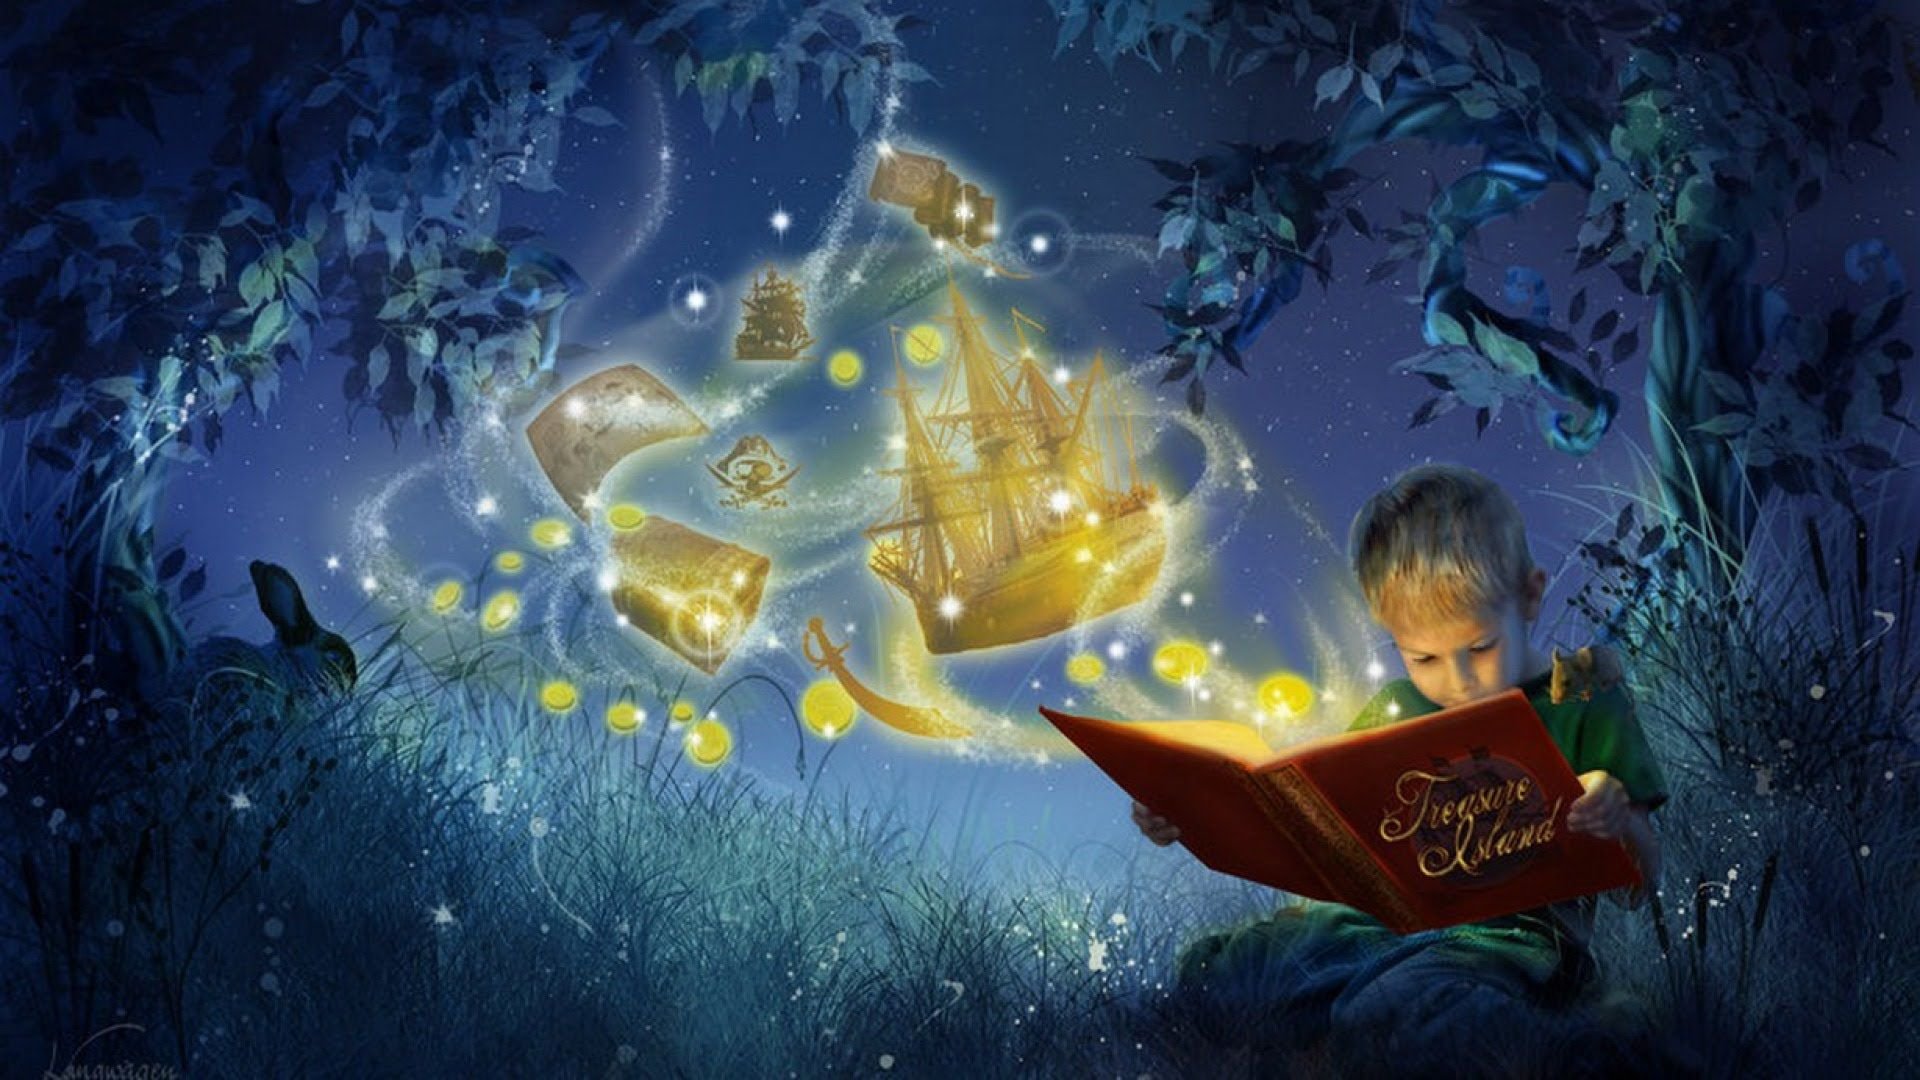 Читать сказки внутри. Волшебный мир сказок. Ночные сказки. Сказочные чудеса. Волшебство для детей.